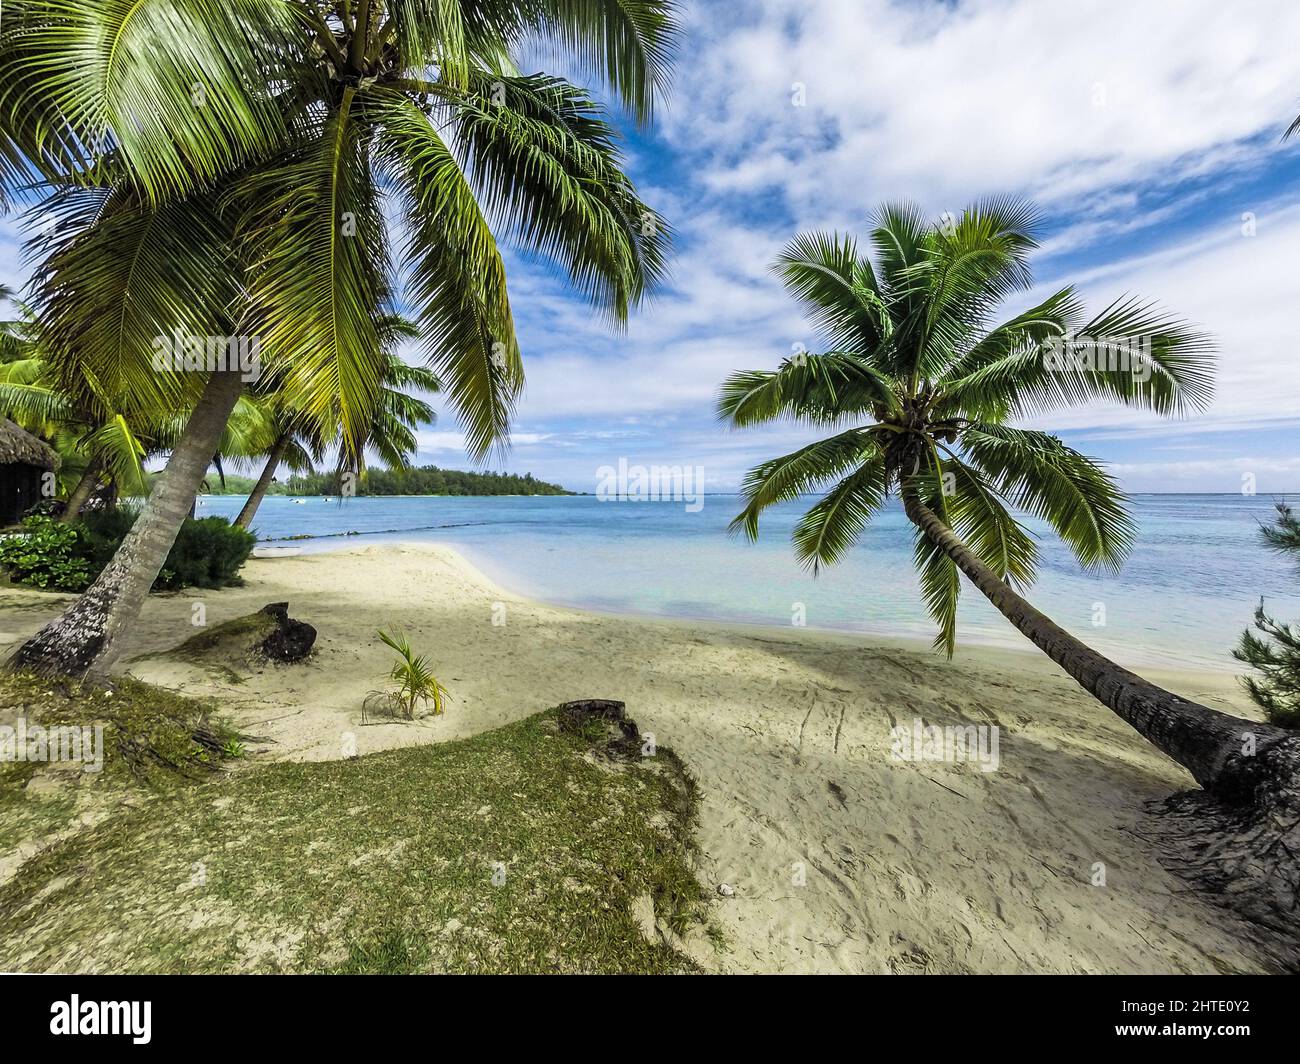 Quiet beach in Tahiti Stock Photo